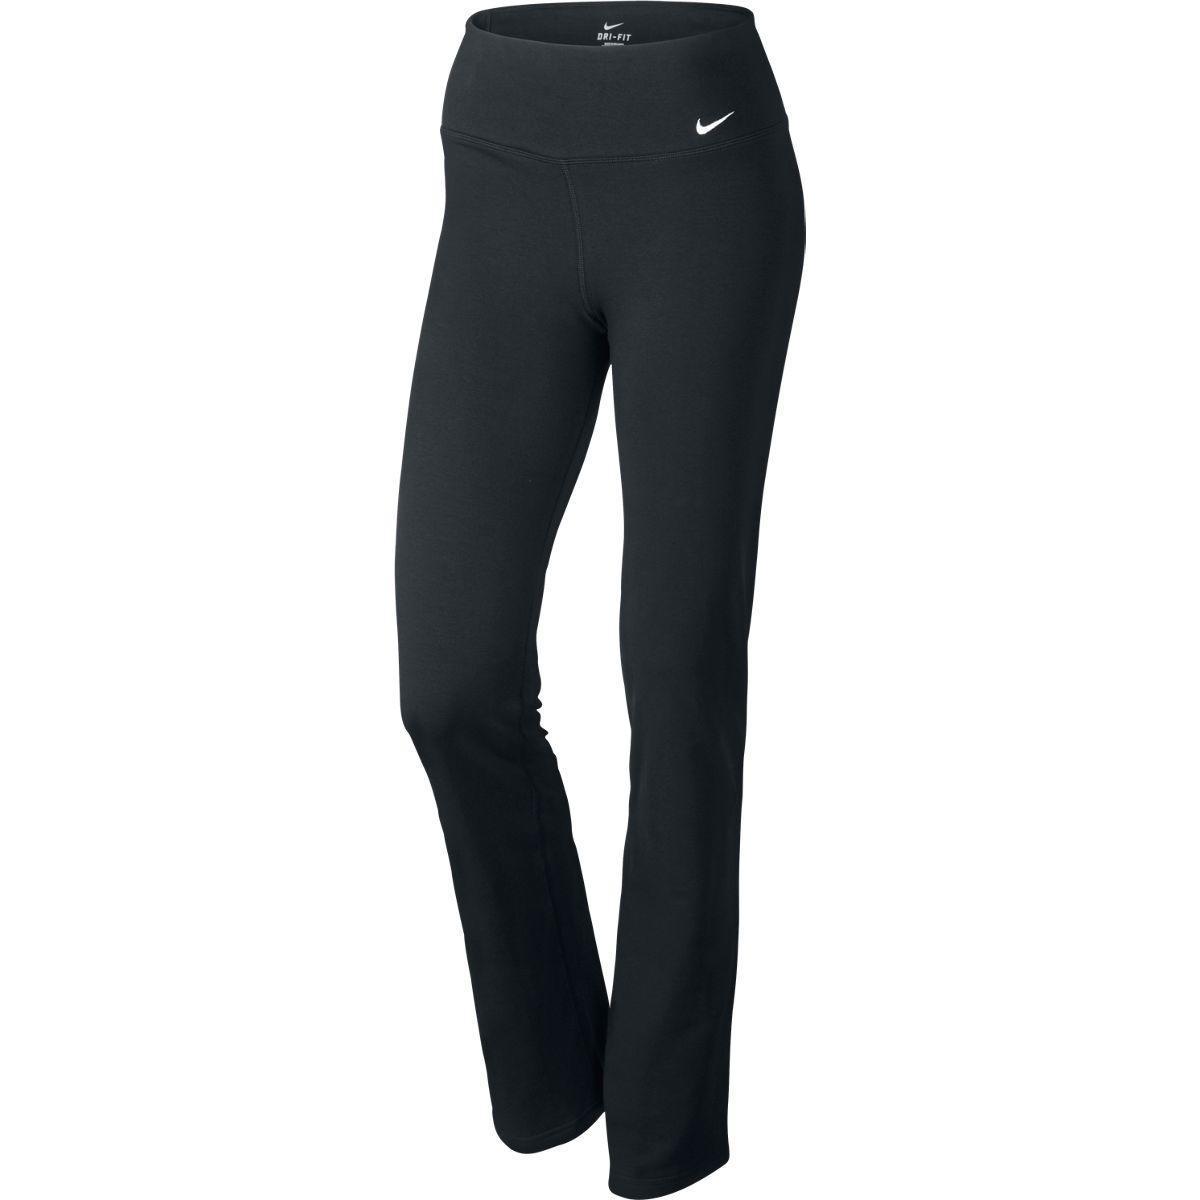 Nike Womens Running Dri-FIT Slim Fit Legend Pants - Black/White - Tennisnuts.com1200 x 1200